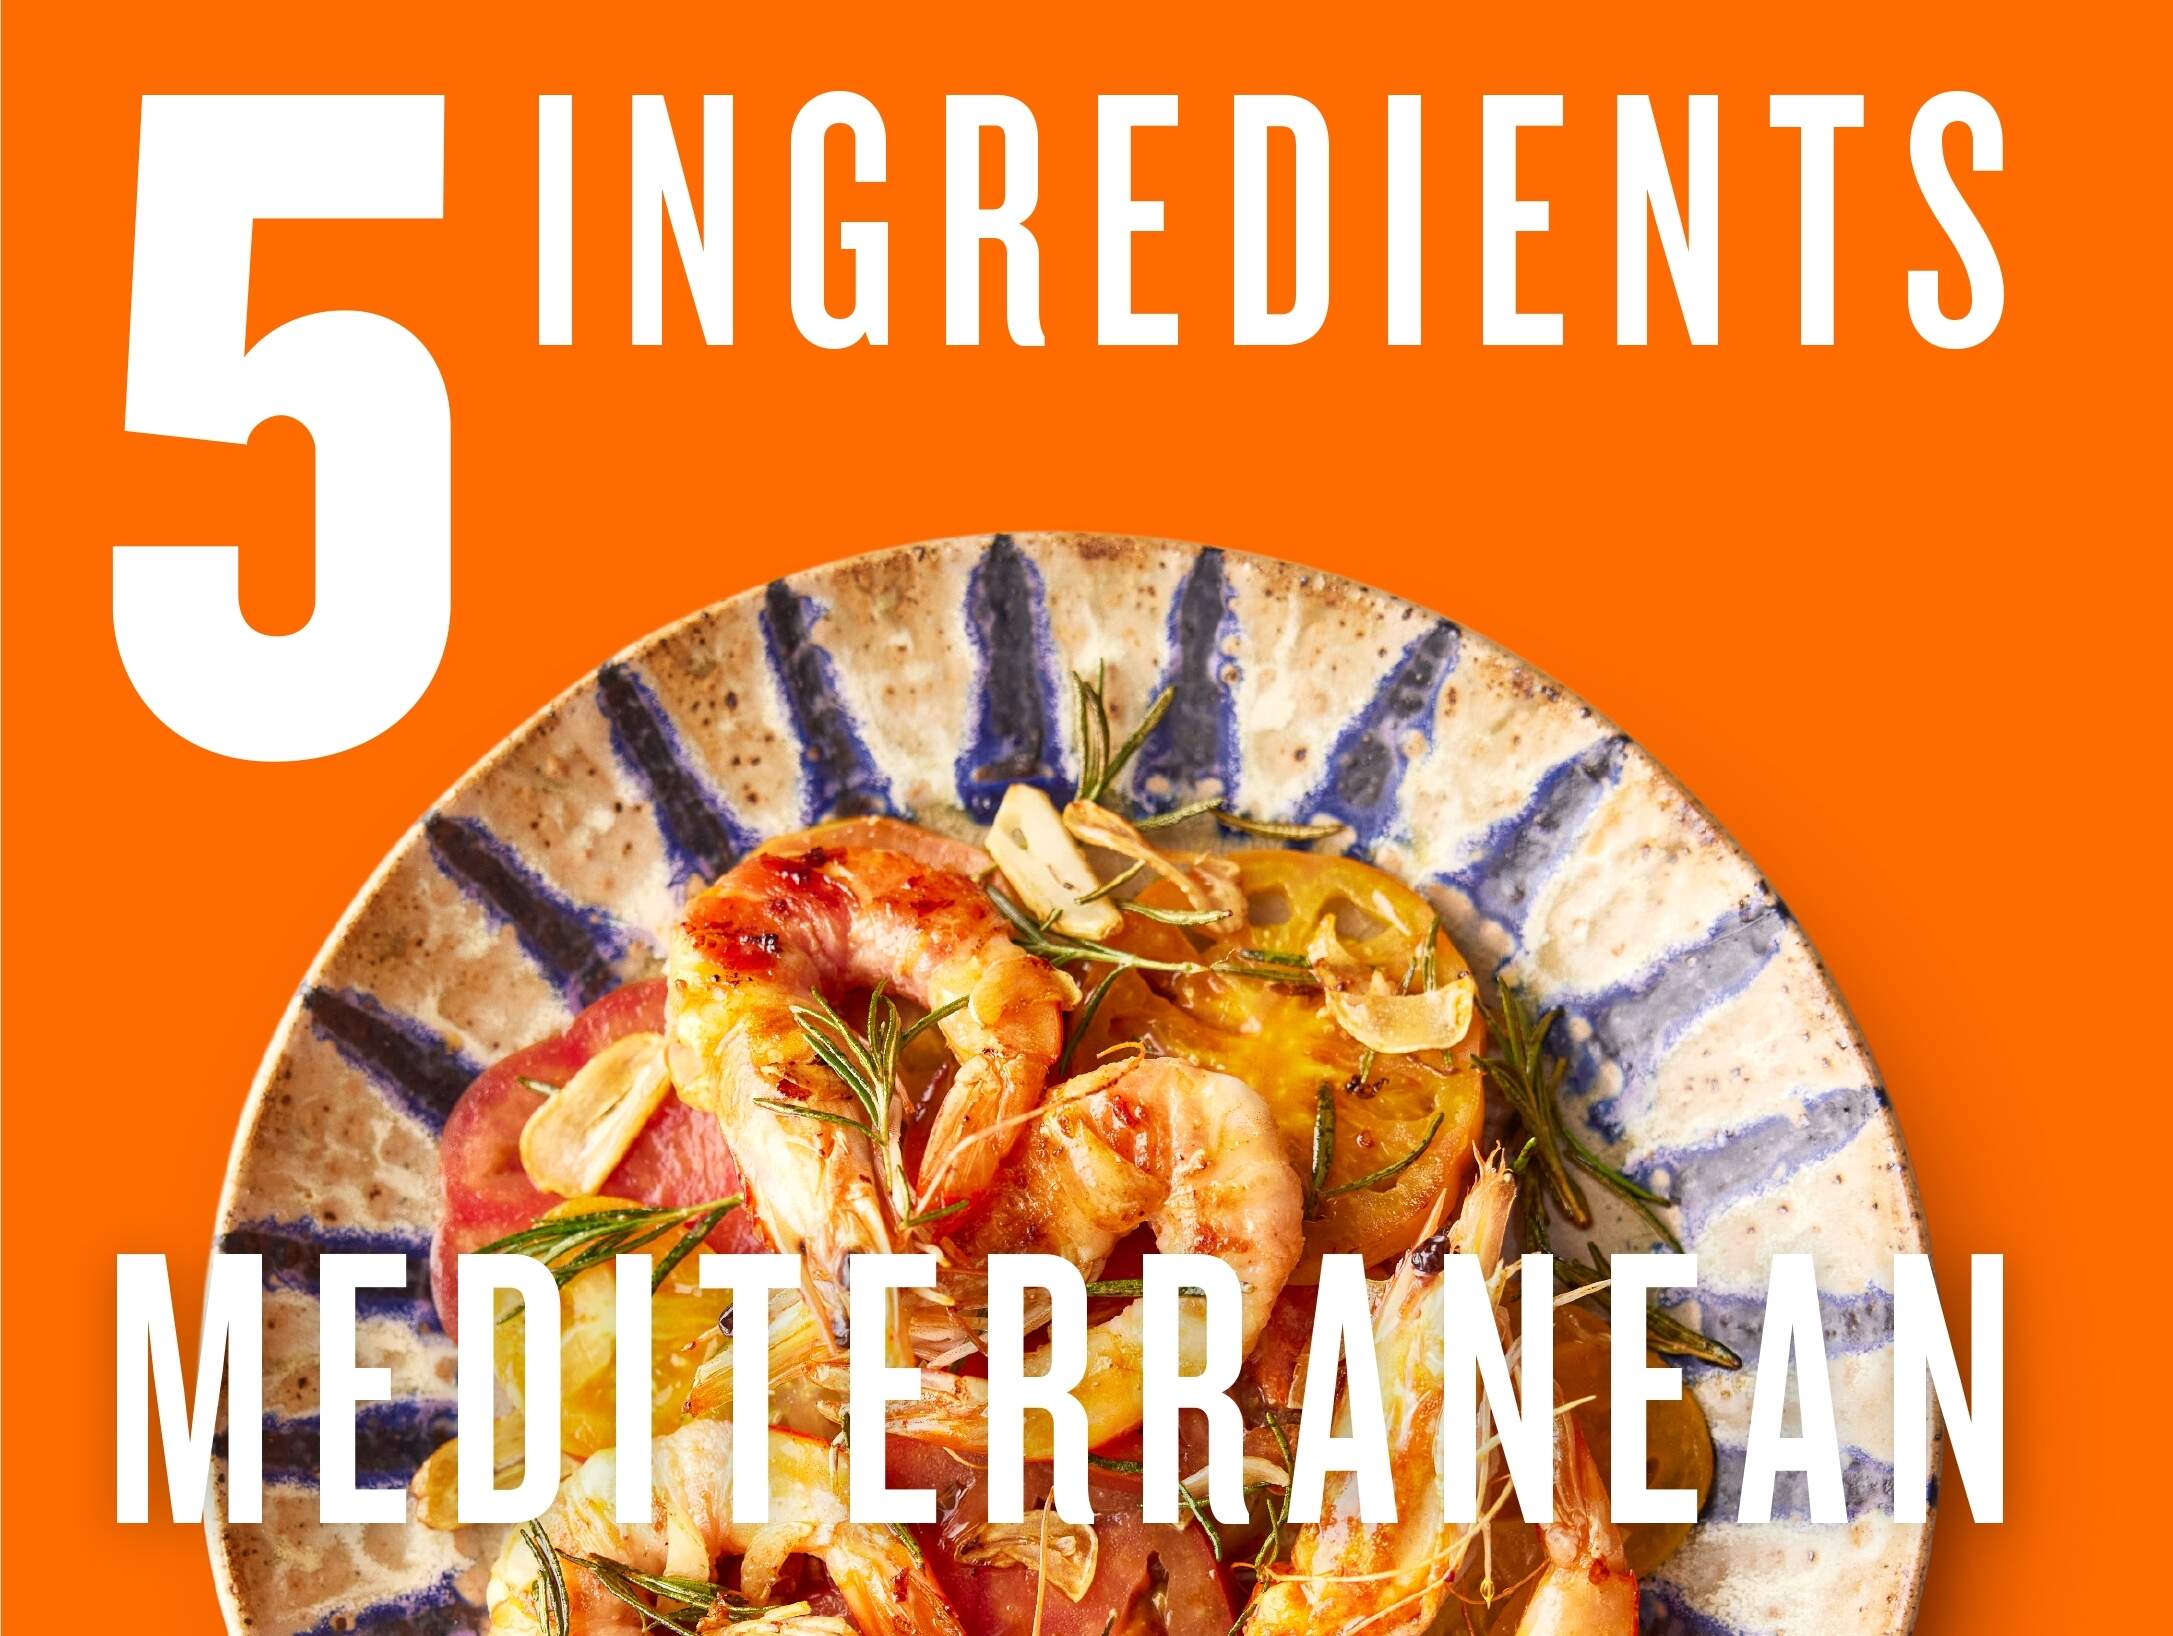 Jamie Oliver's 5 Ingredients Mediterranean – review